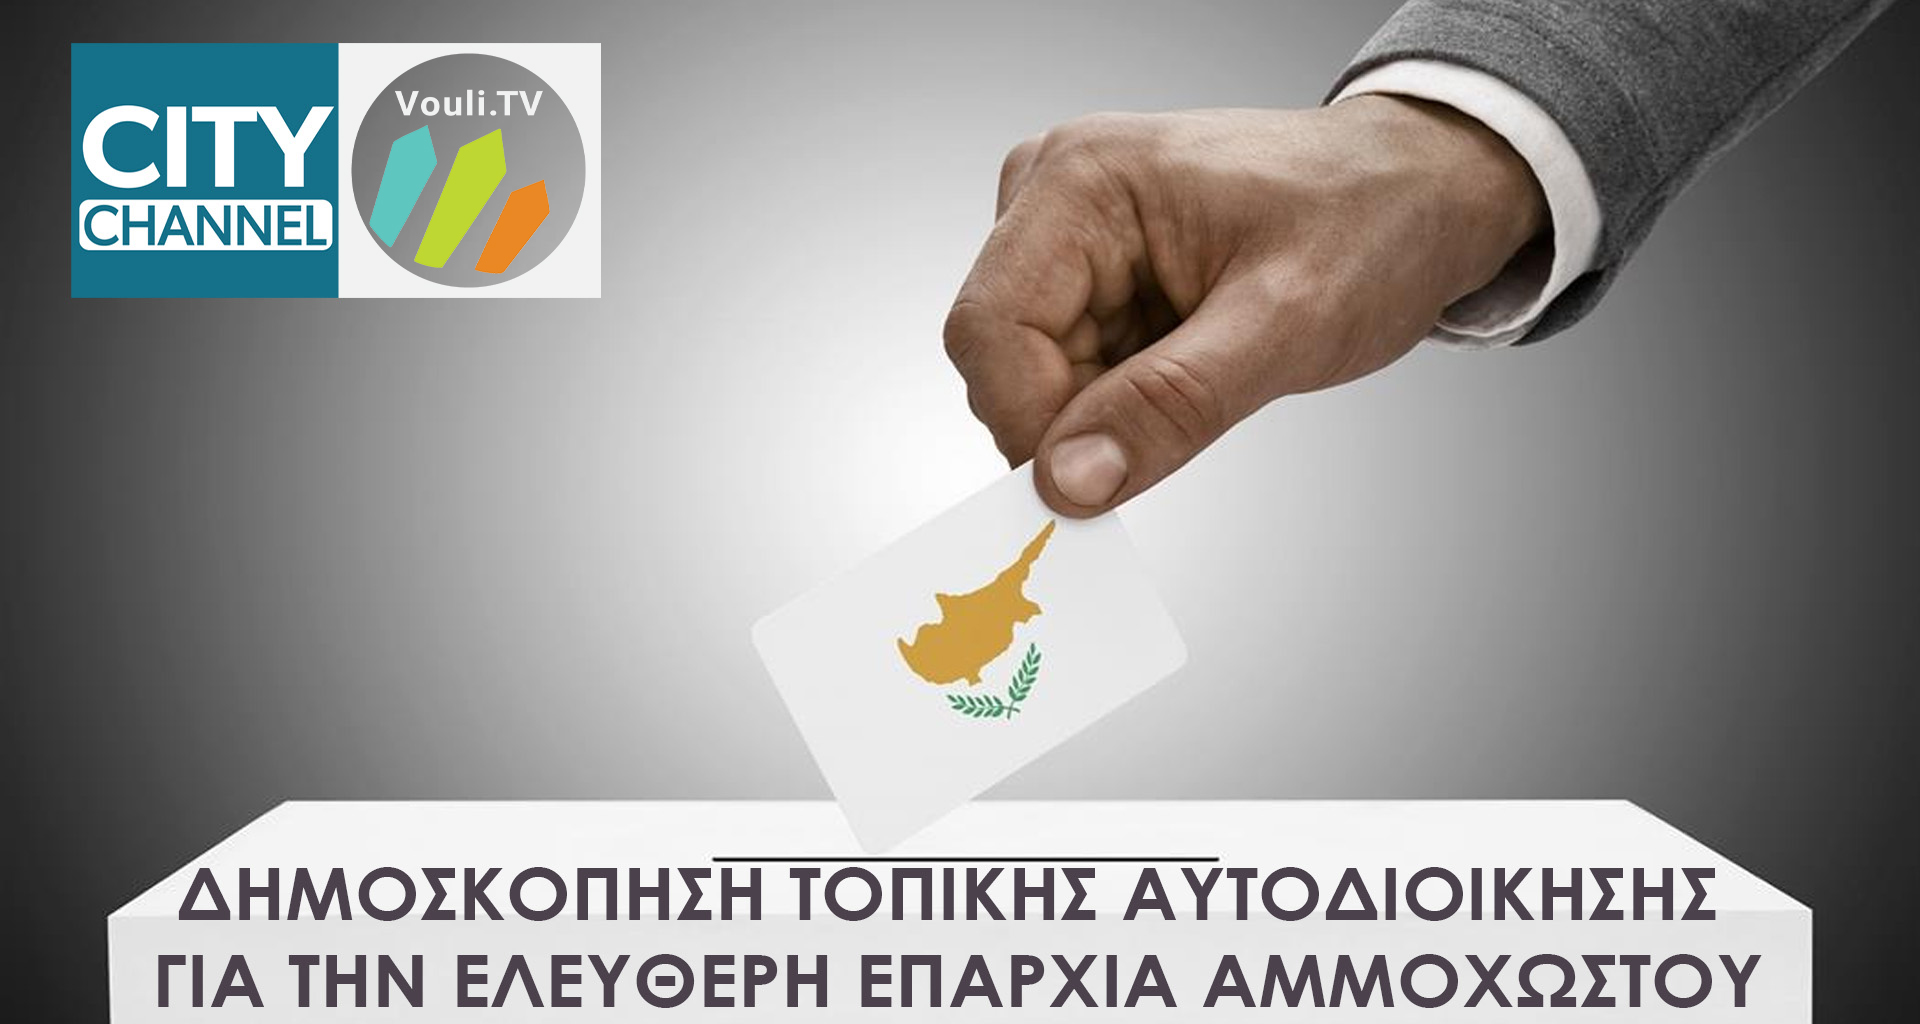 Αποτελέσματα Δημοσκόπησης της Τοπικής Αυτοδιοίκησης στην ελεύθερη επαρχία Αμμοχώστου | Σάββατο 06/05, 11πμ